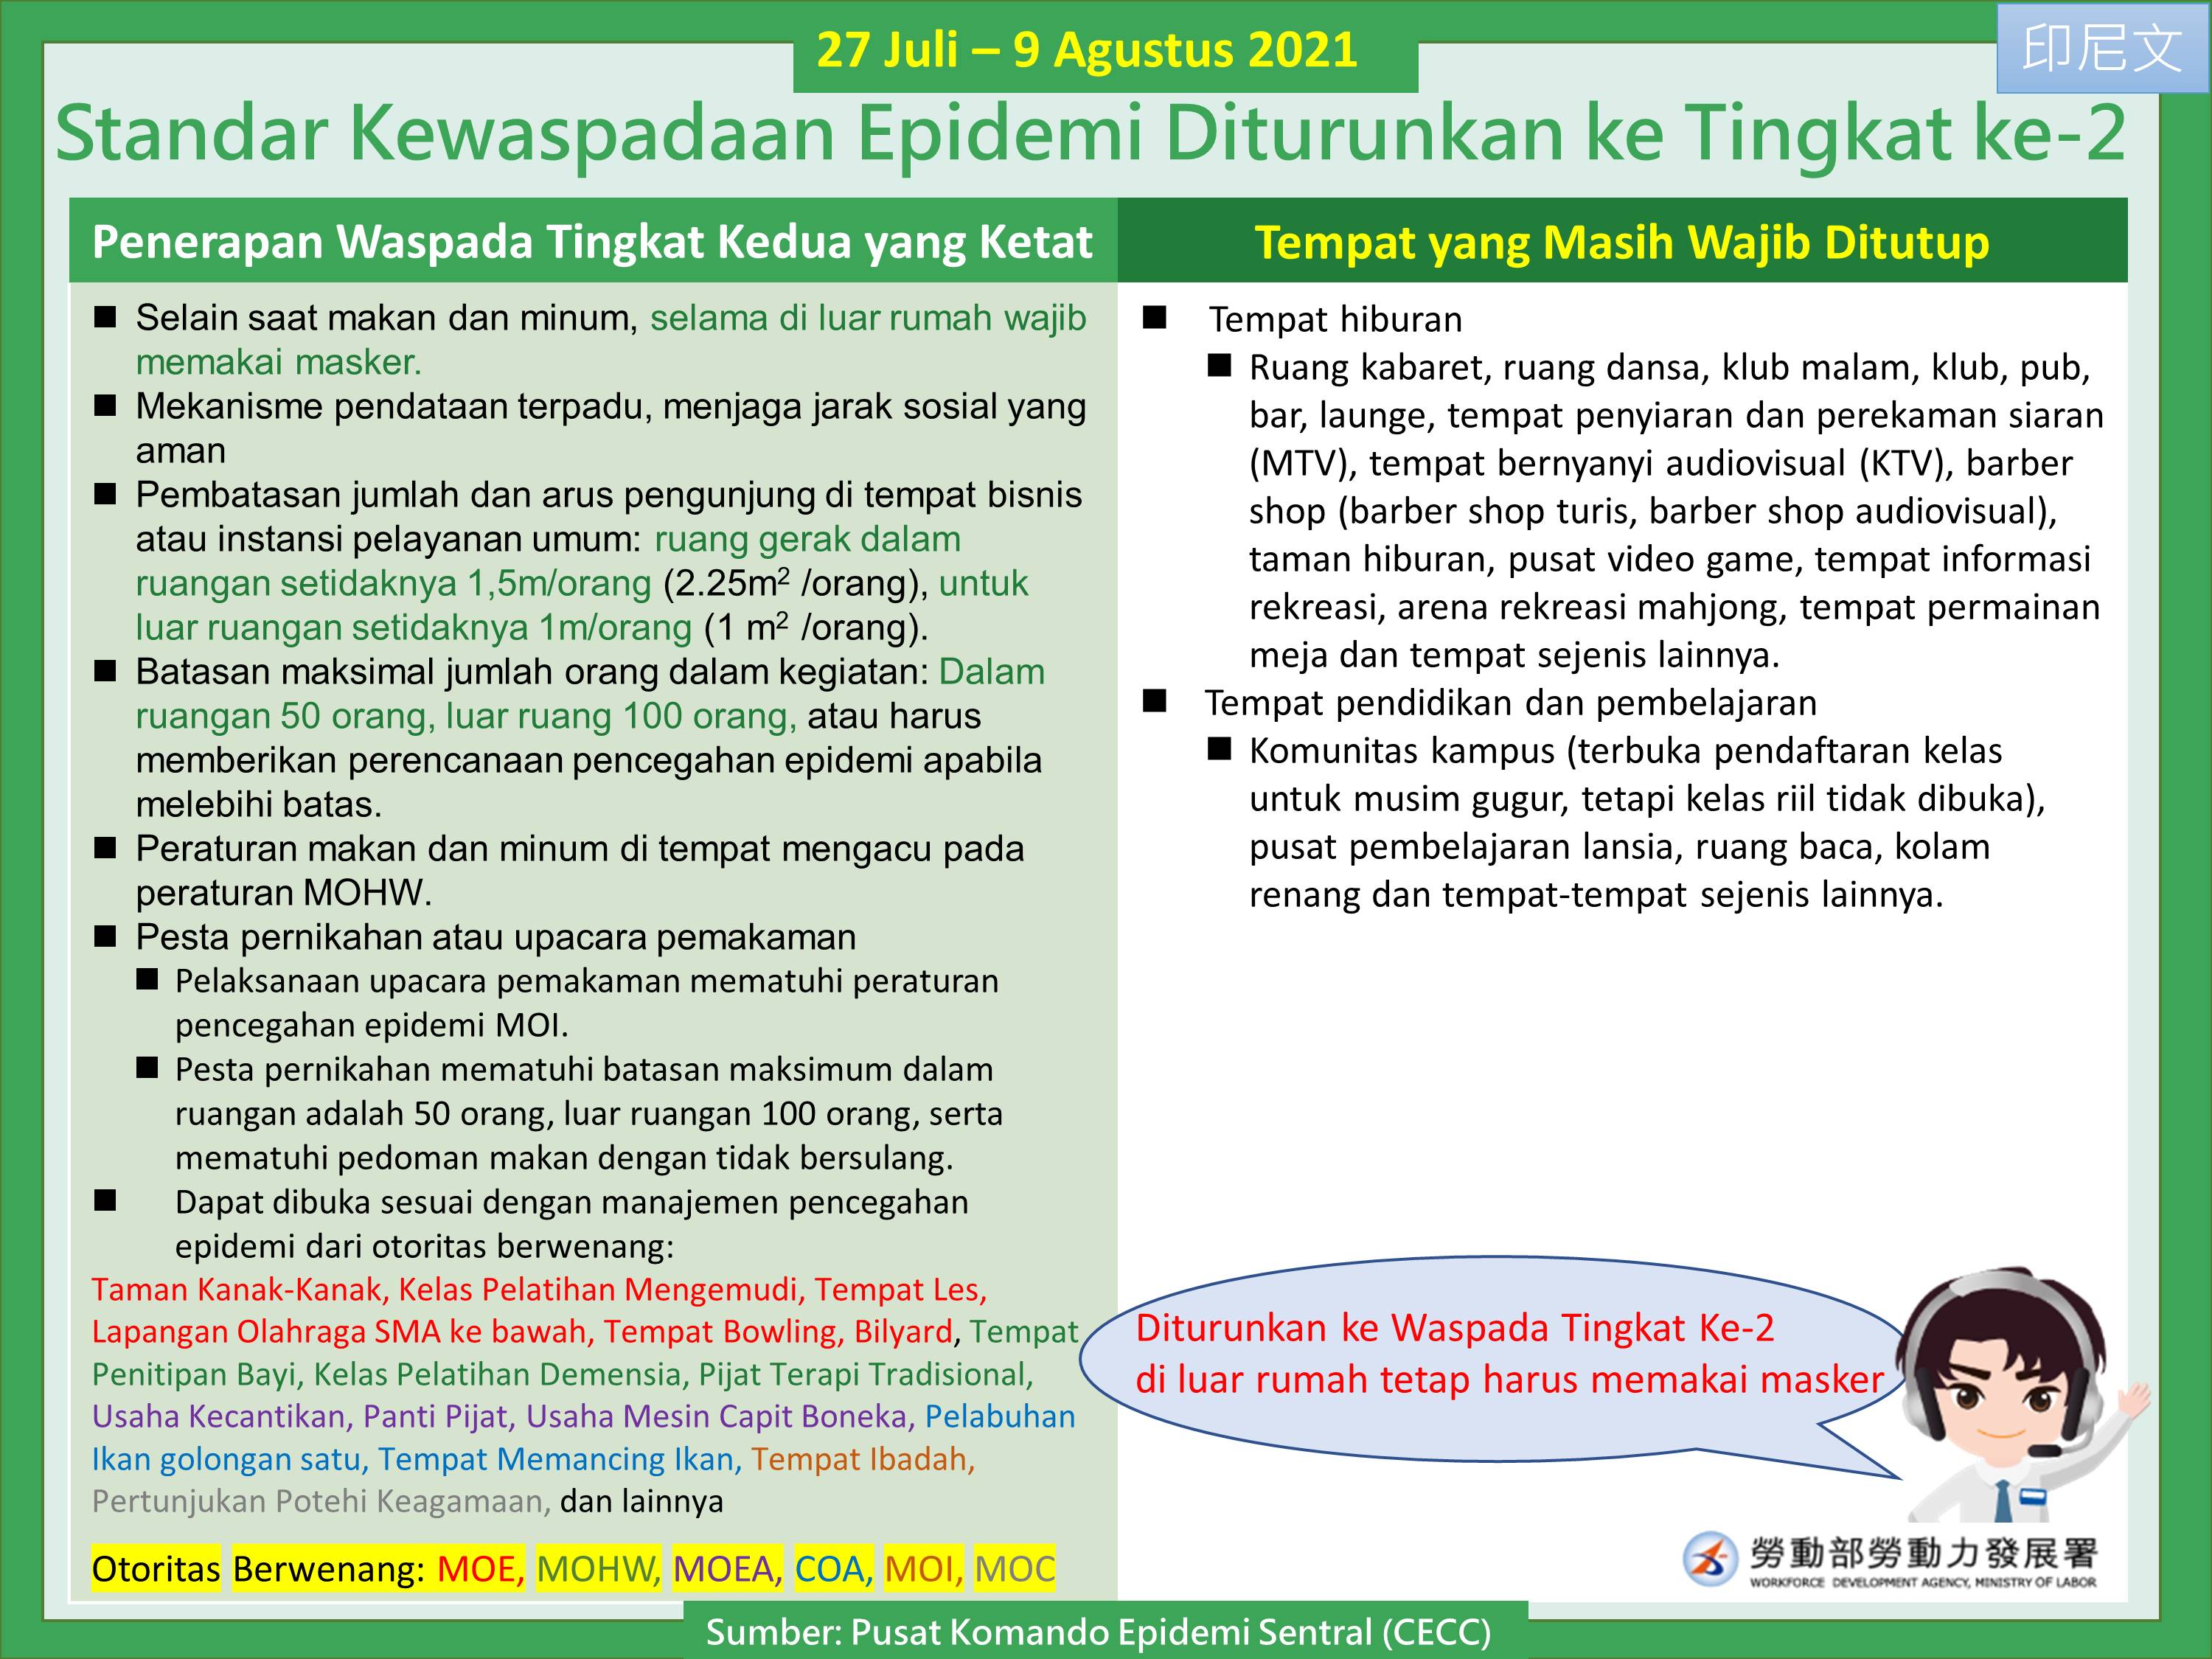 調降疫情警戒標準至第二級-印尼文.JPG